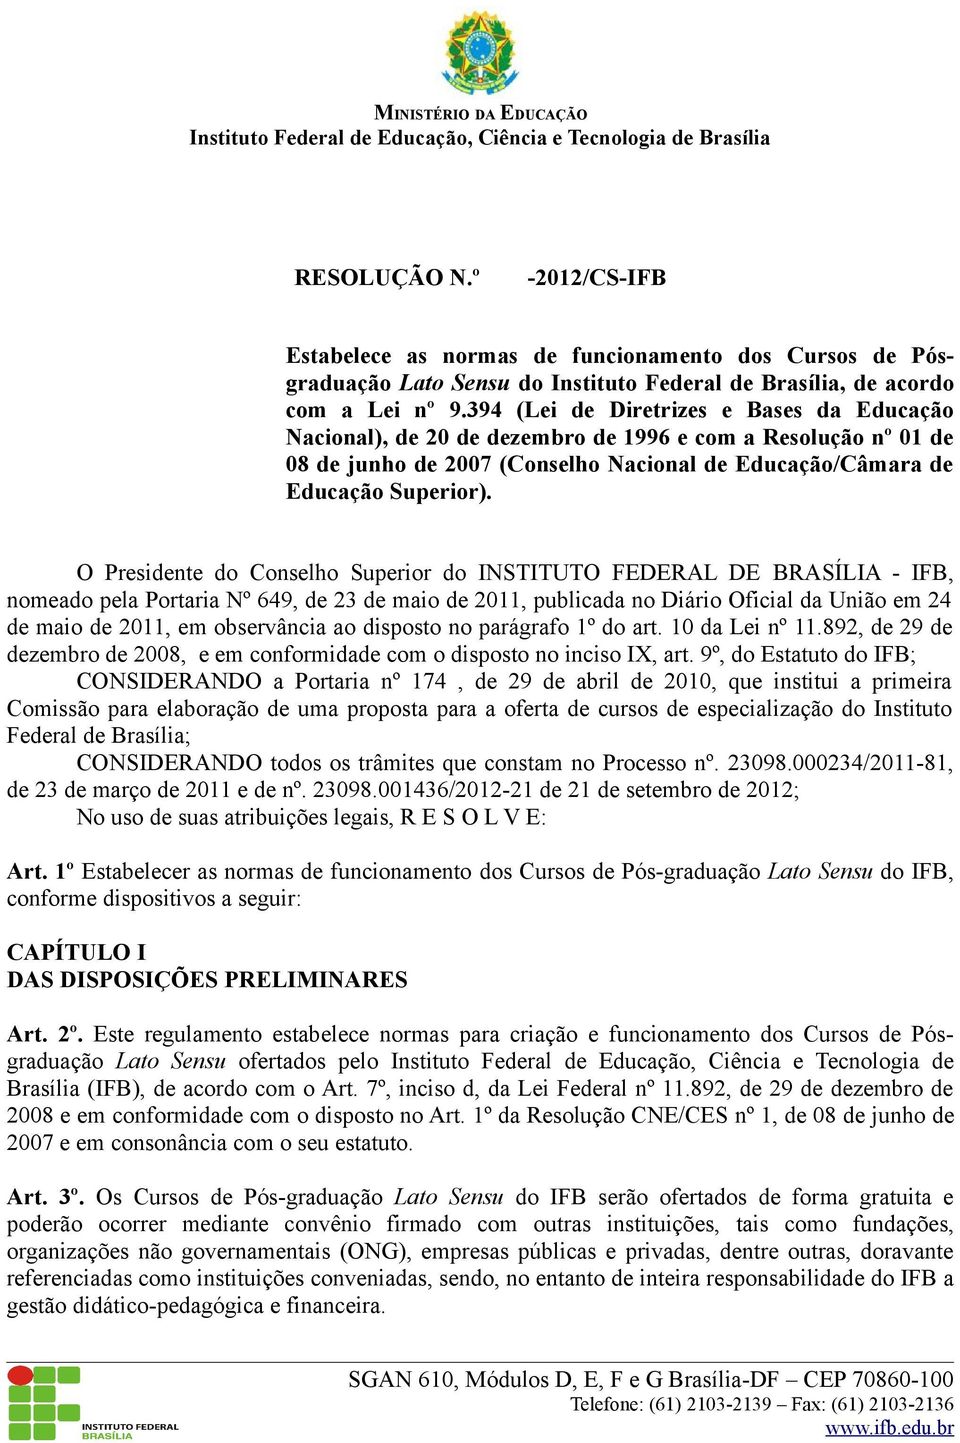 O Presidente do Conselho Superior do INSTITUTO FEDERAL DE BRASÍLIA - IFB, nomeado pela Portaria Nº 649, de 23 de maio de 2011, publicada no Diário Oficial da União em 24 de maio de 2011, em